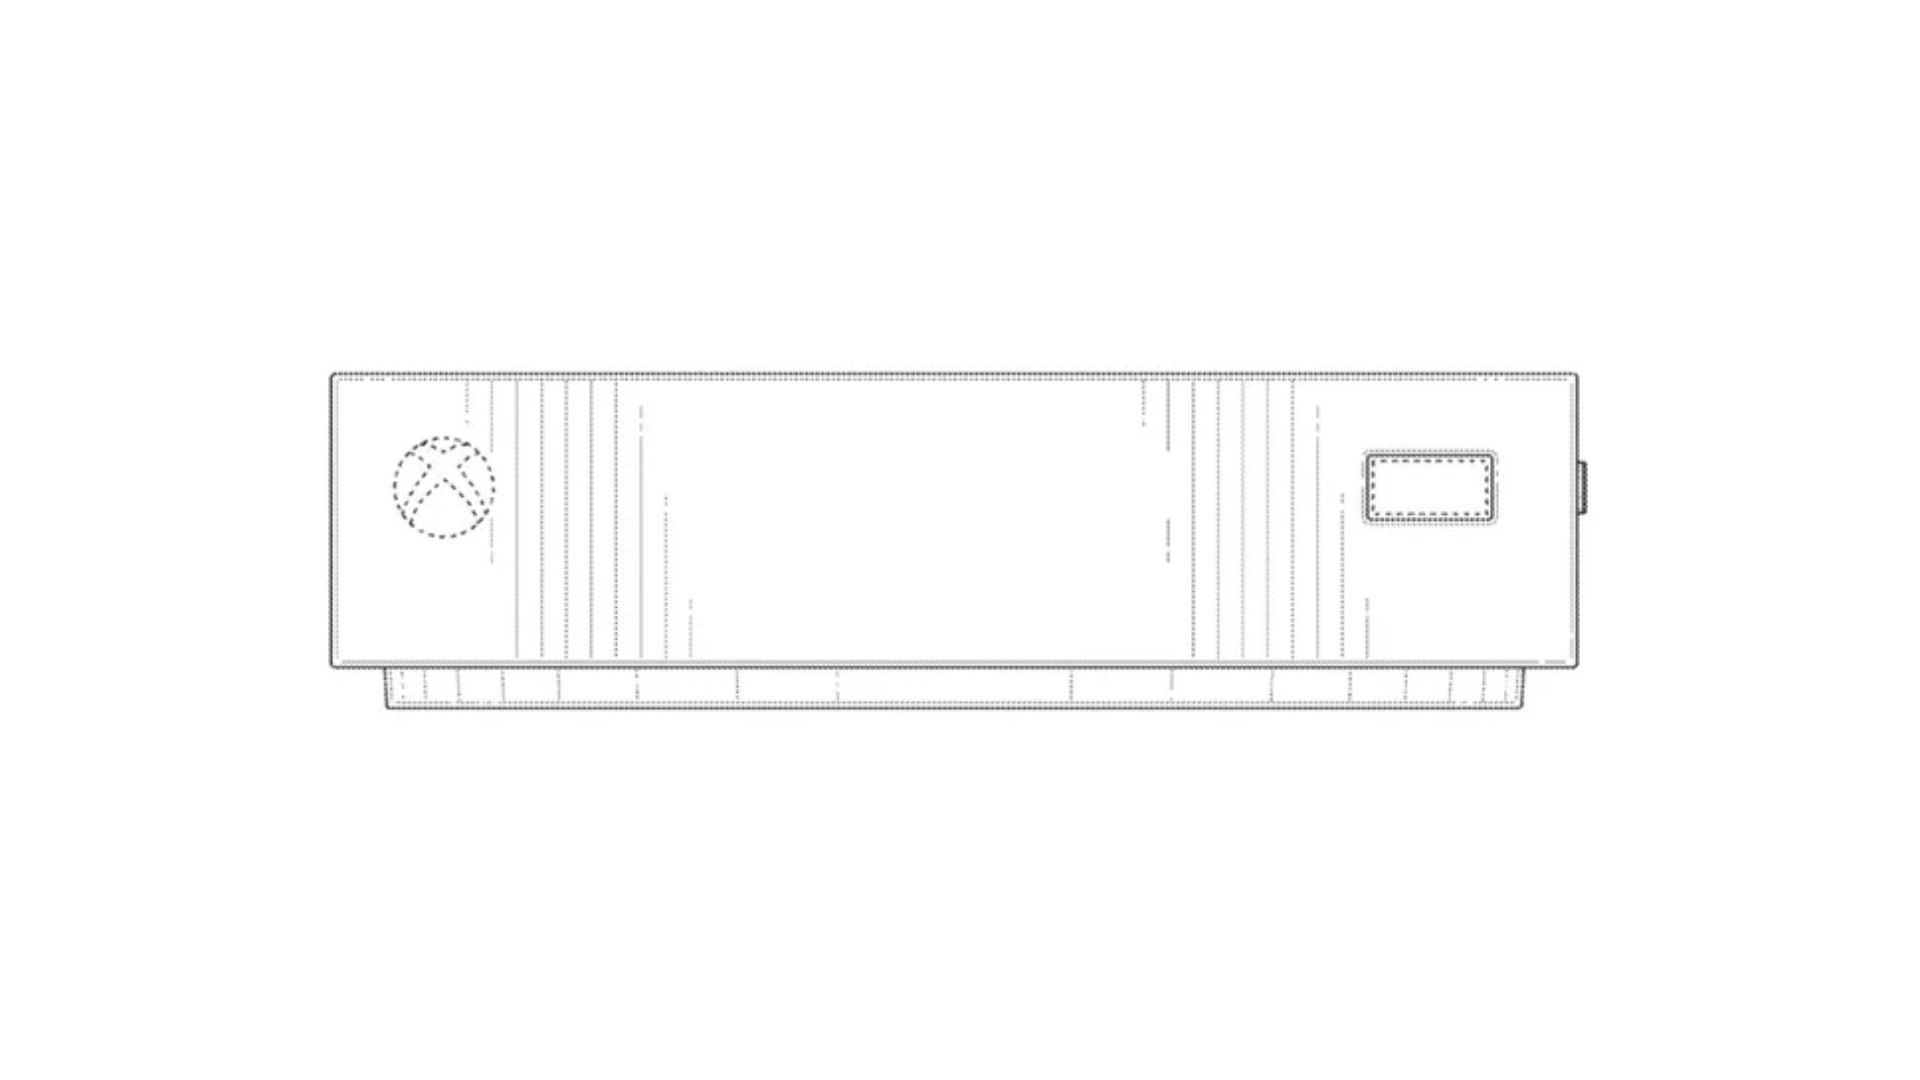 طراحی پنل جلویی کنسول ایکس باکس کی استون در اسناد ثبت اختراع مایکروسافت xbox keystone front view from microsoft patent